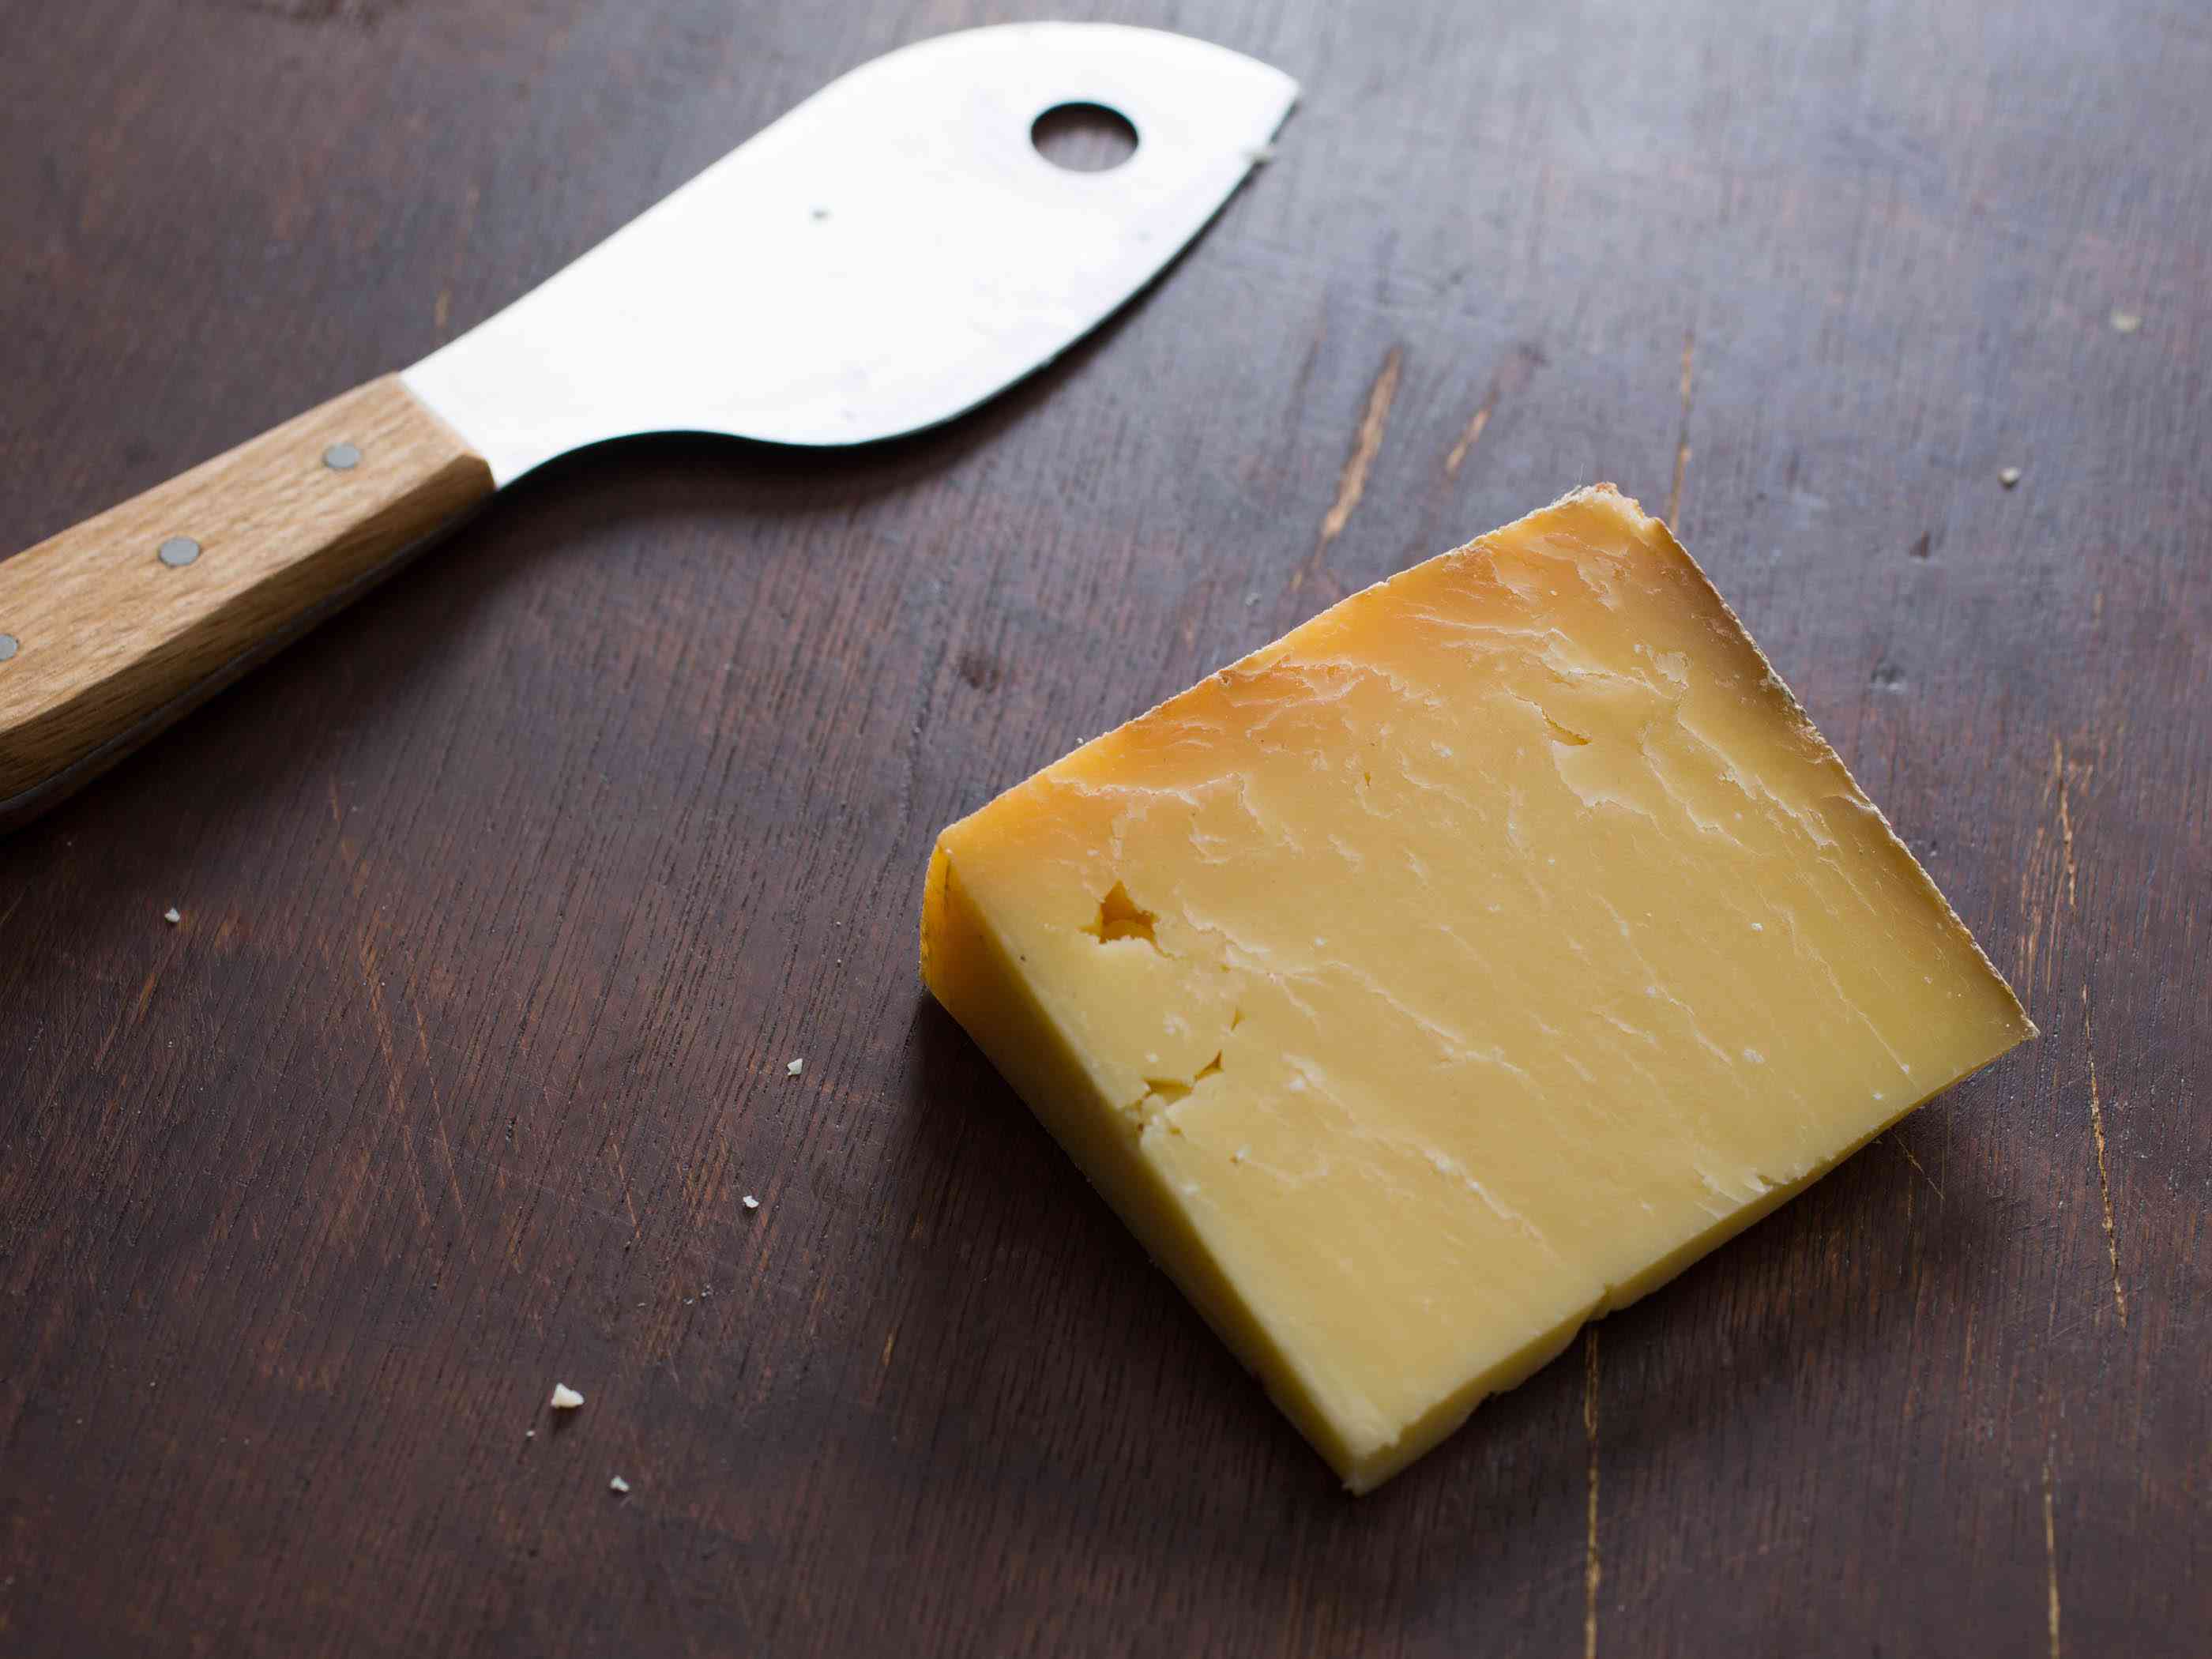 一块楔形的硬奶酪，旁边放一把奶酪刀。它们都放在一张深色的木桌上。